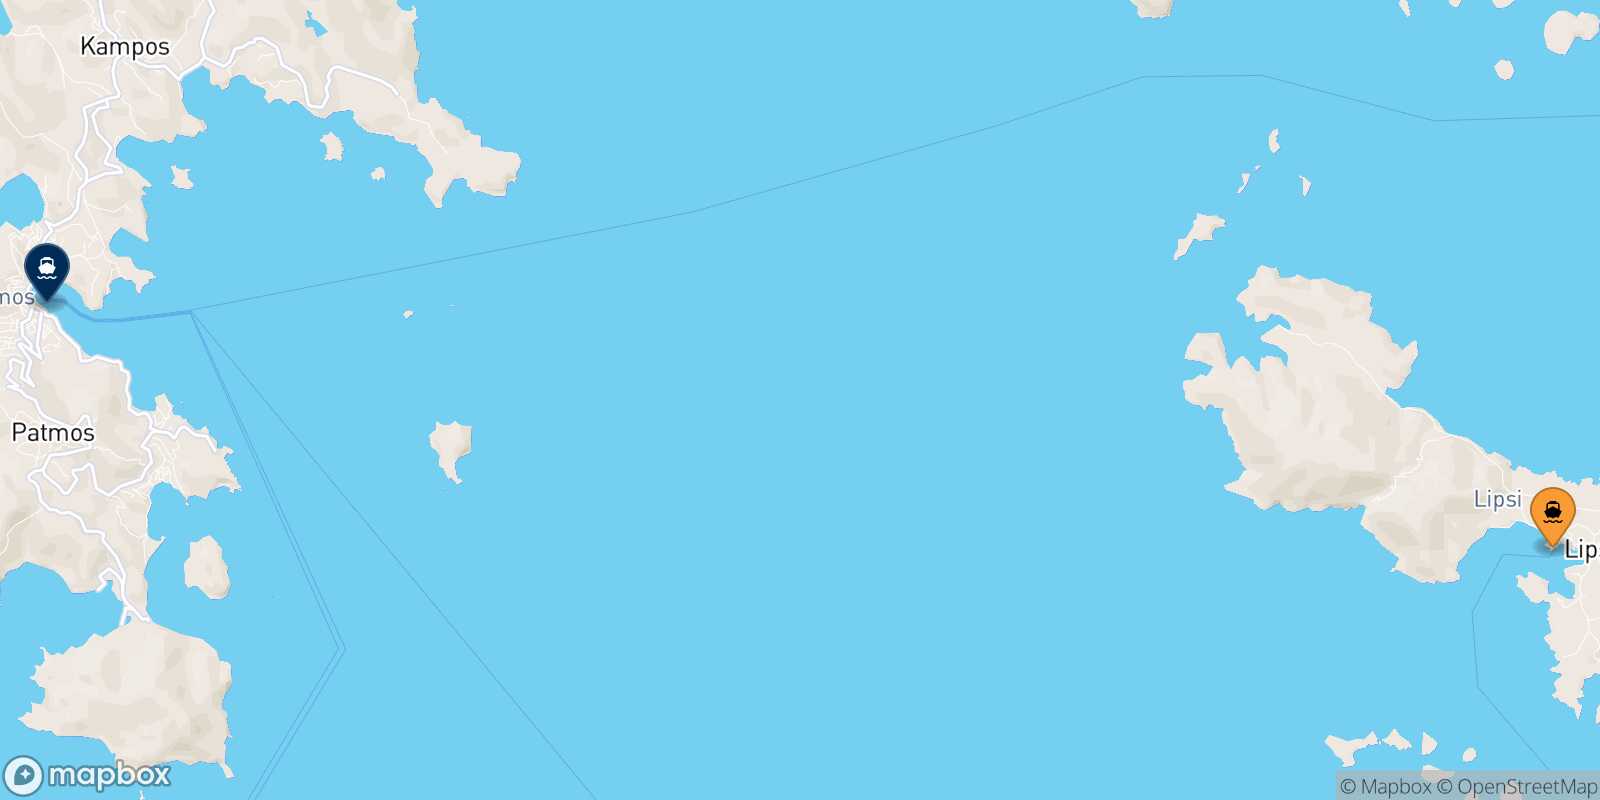 Mapa de la ruta Lipsi Patmos